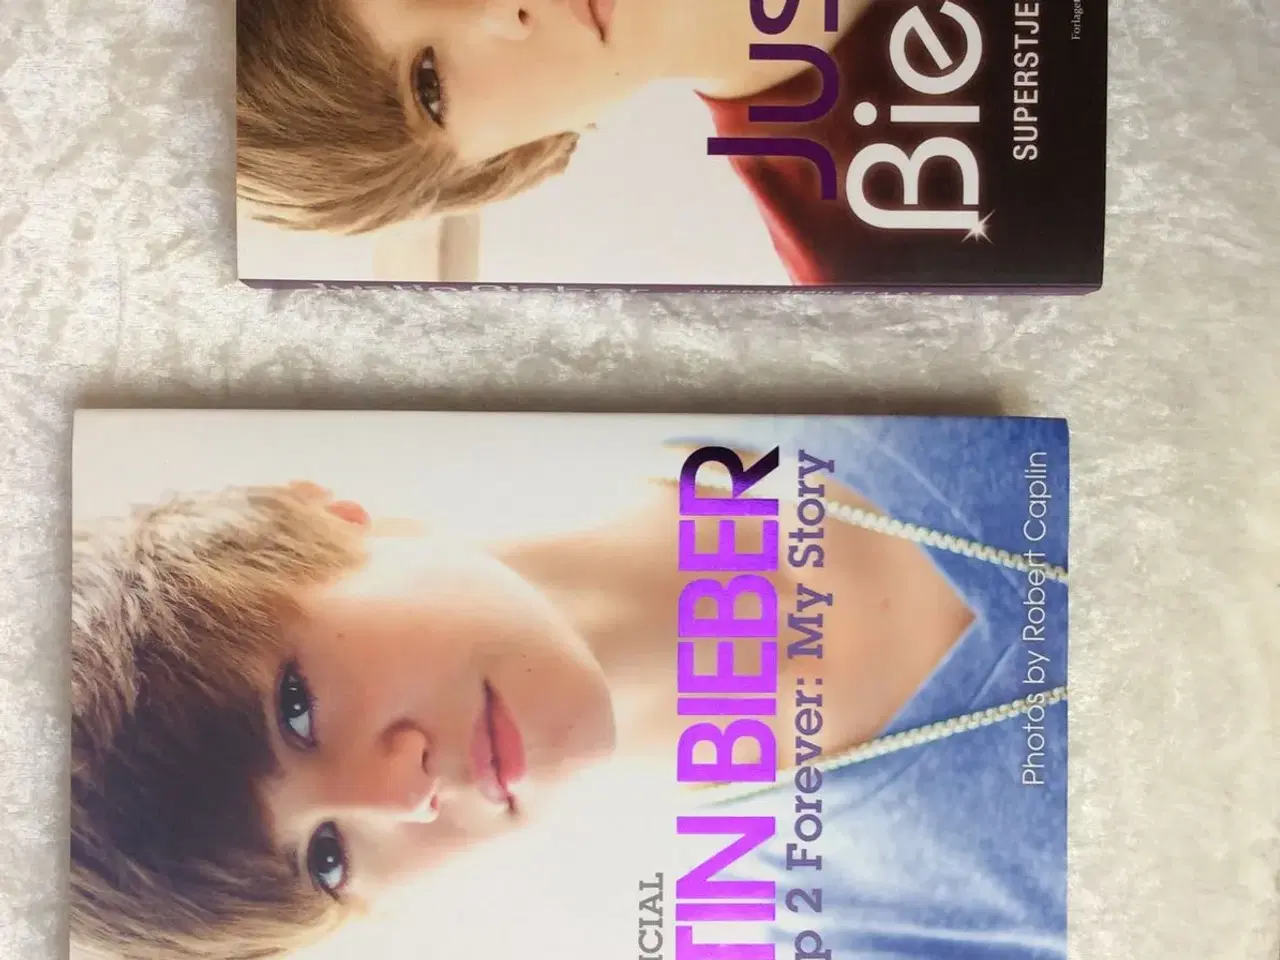 Billede 2 - Spritnye Justin Bieber bøger